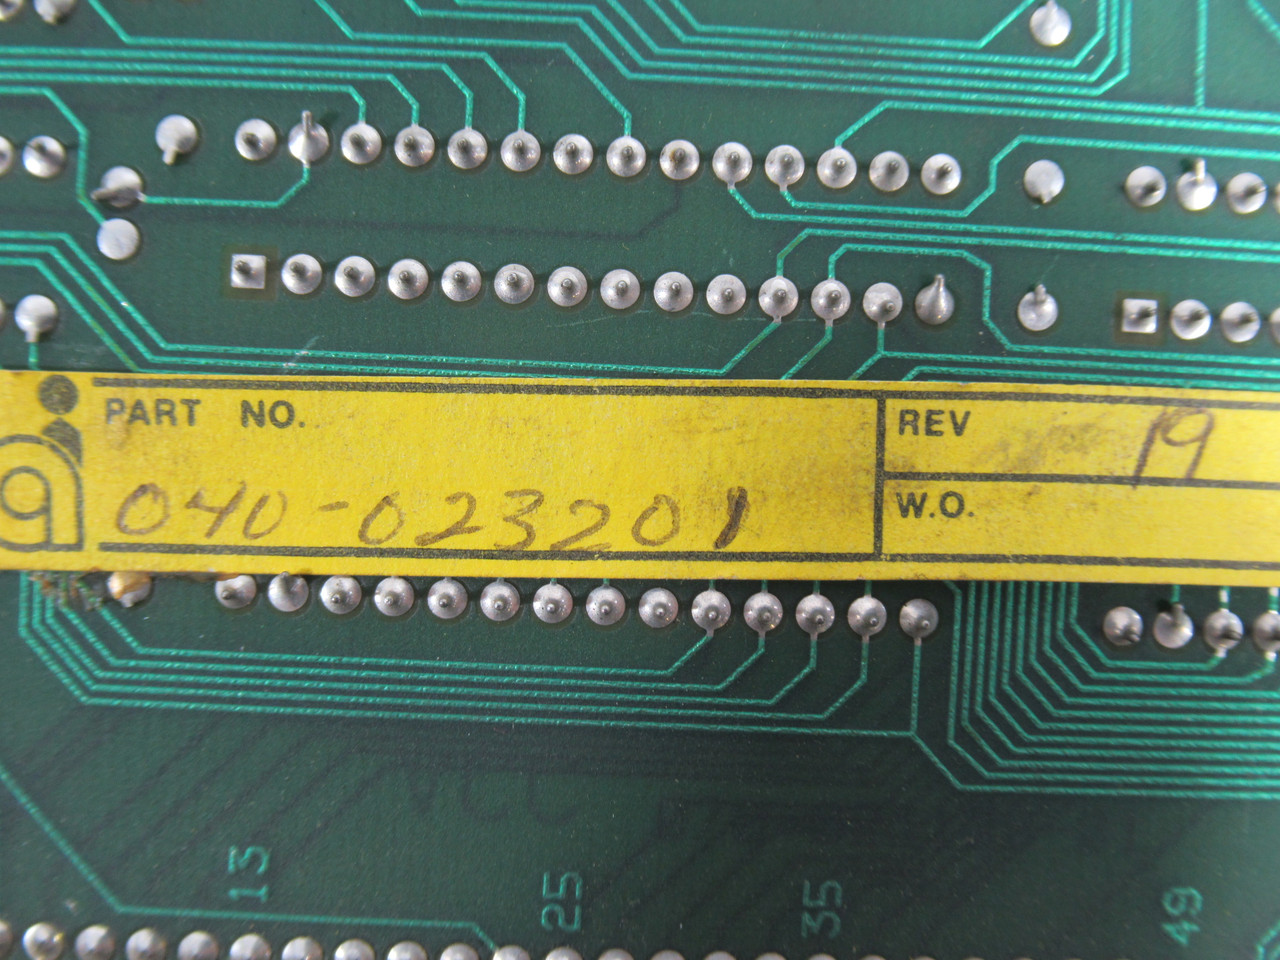 Automatix 040-023201 Rev.19 CP4932 Processor Circuit Board USED